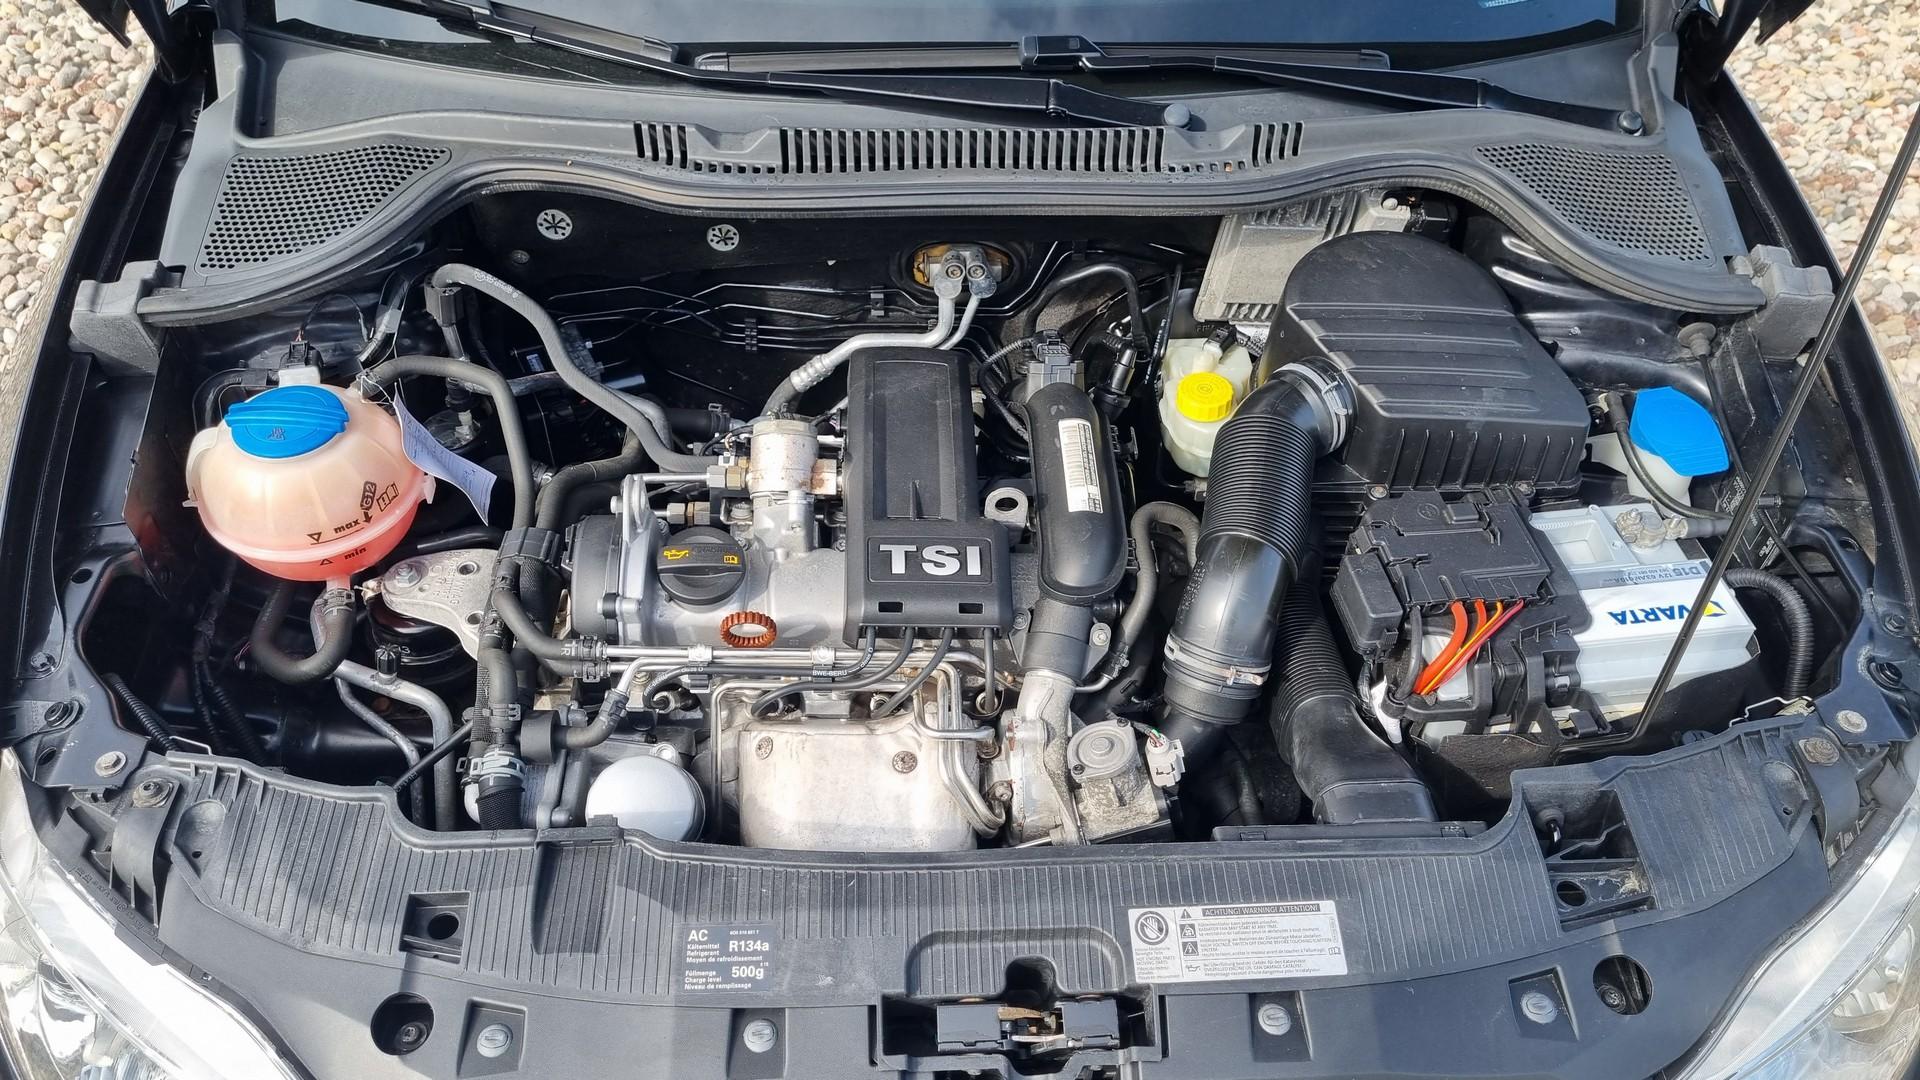 Seat Ibiza 1.2 Benzyna 105KM Automat Klima